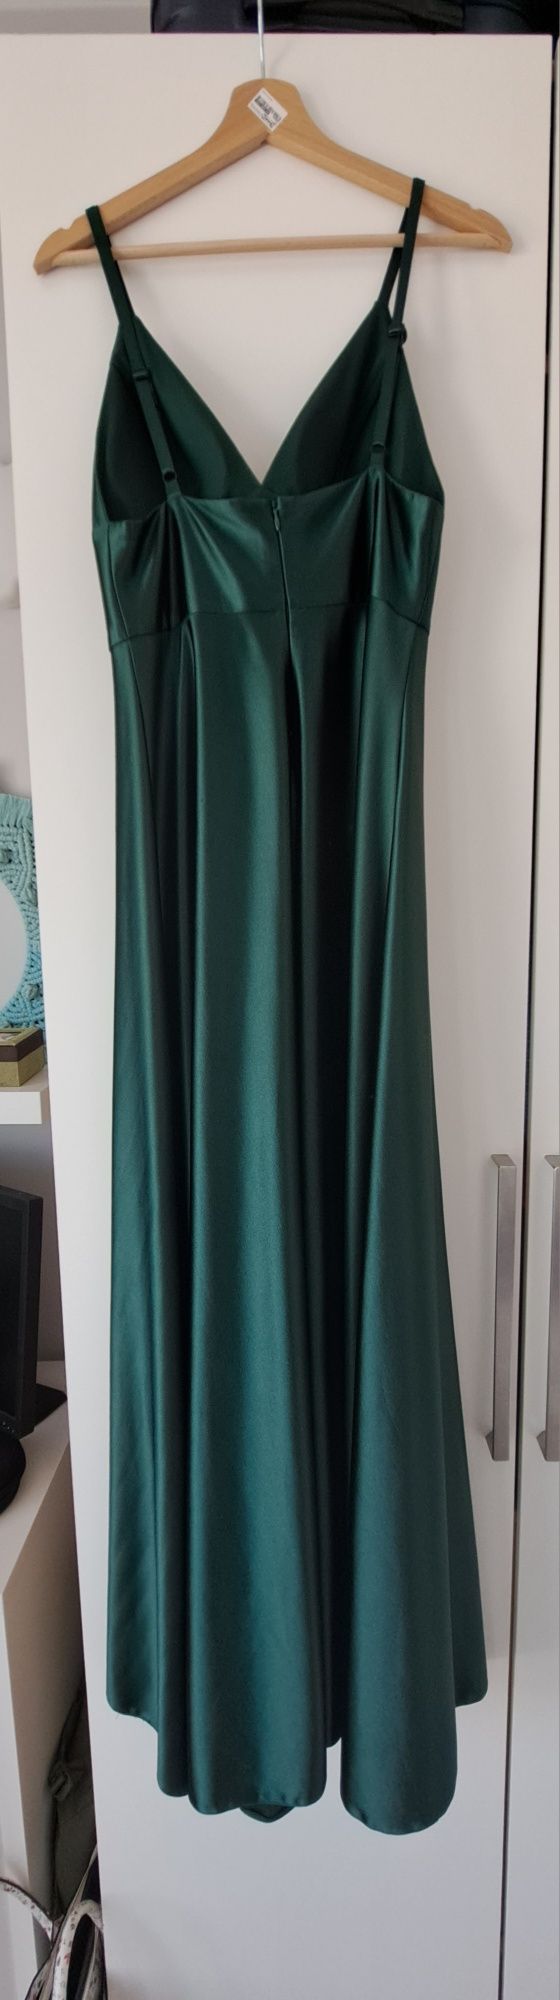 Długa sukienka butelkowa zieleń M